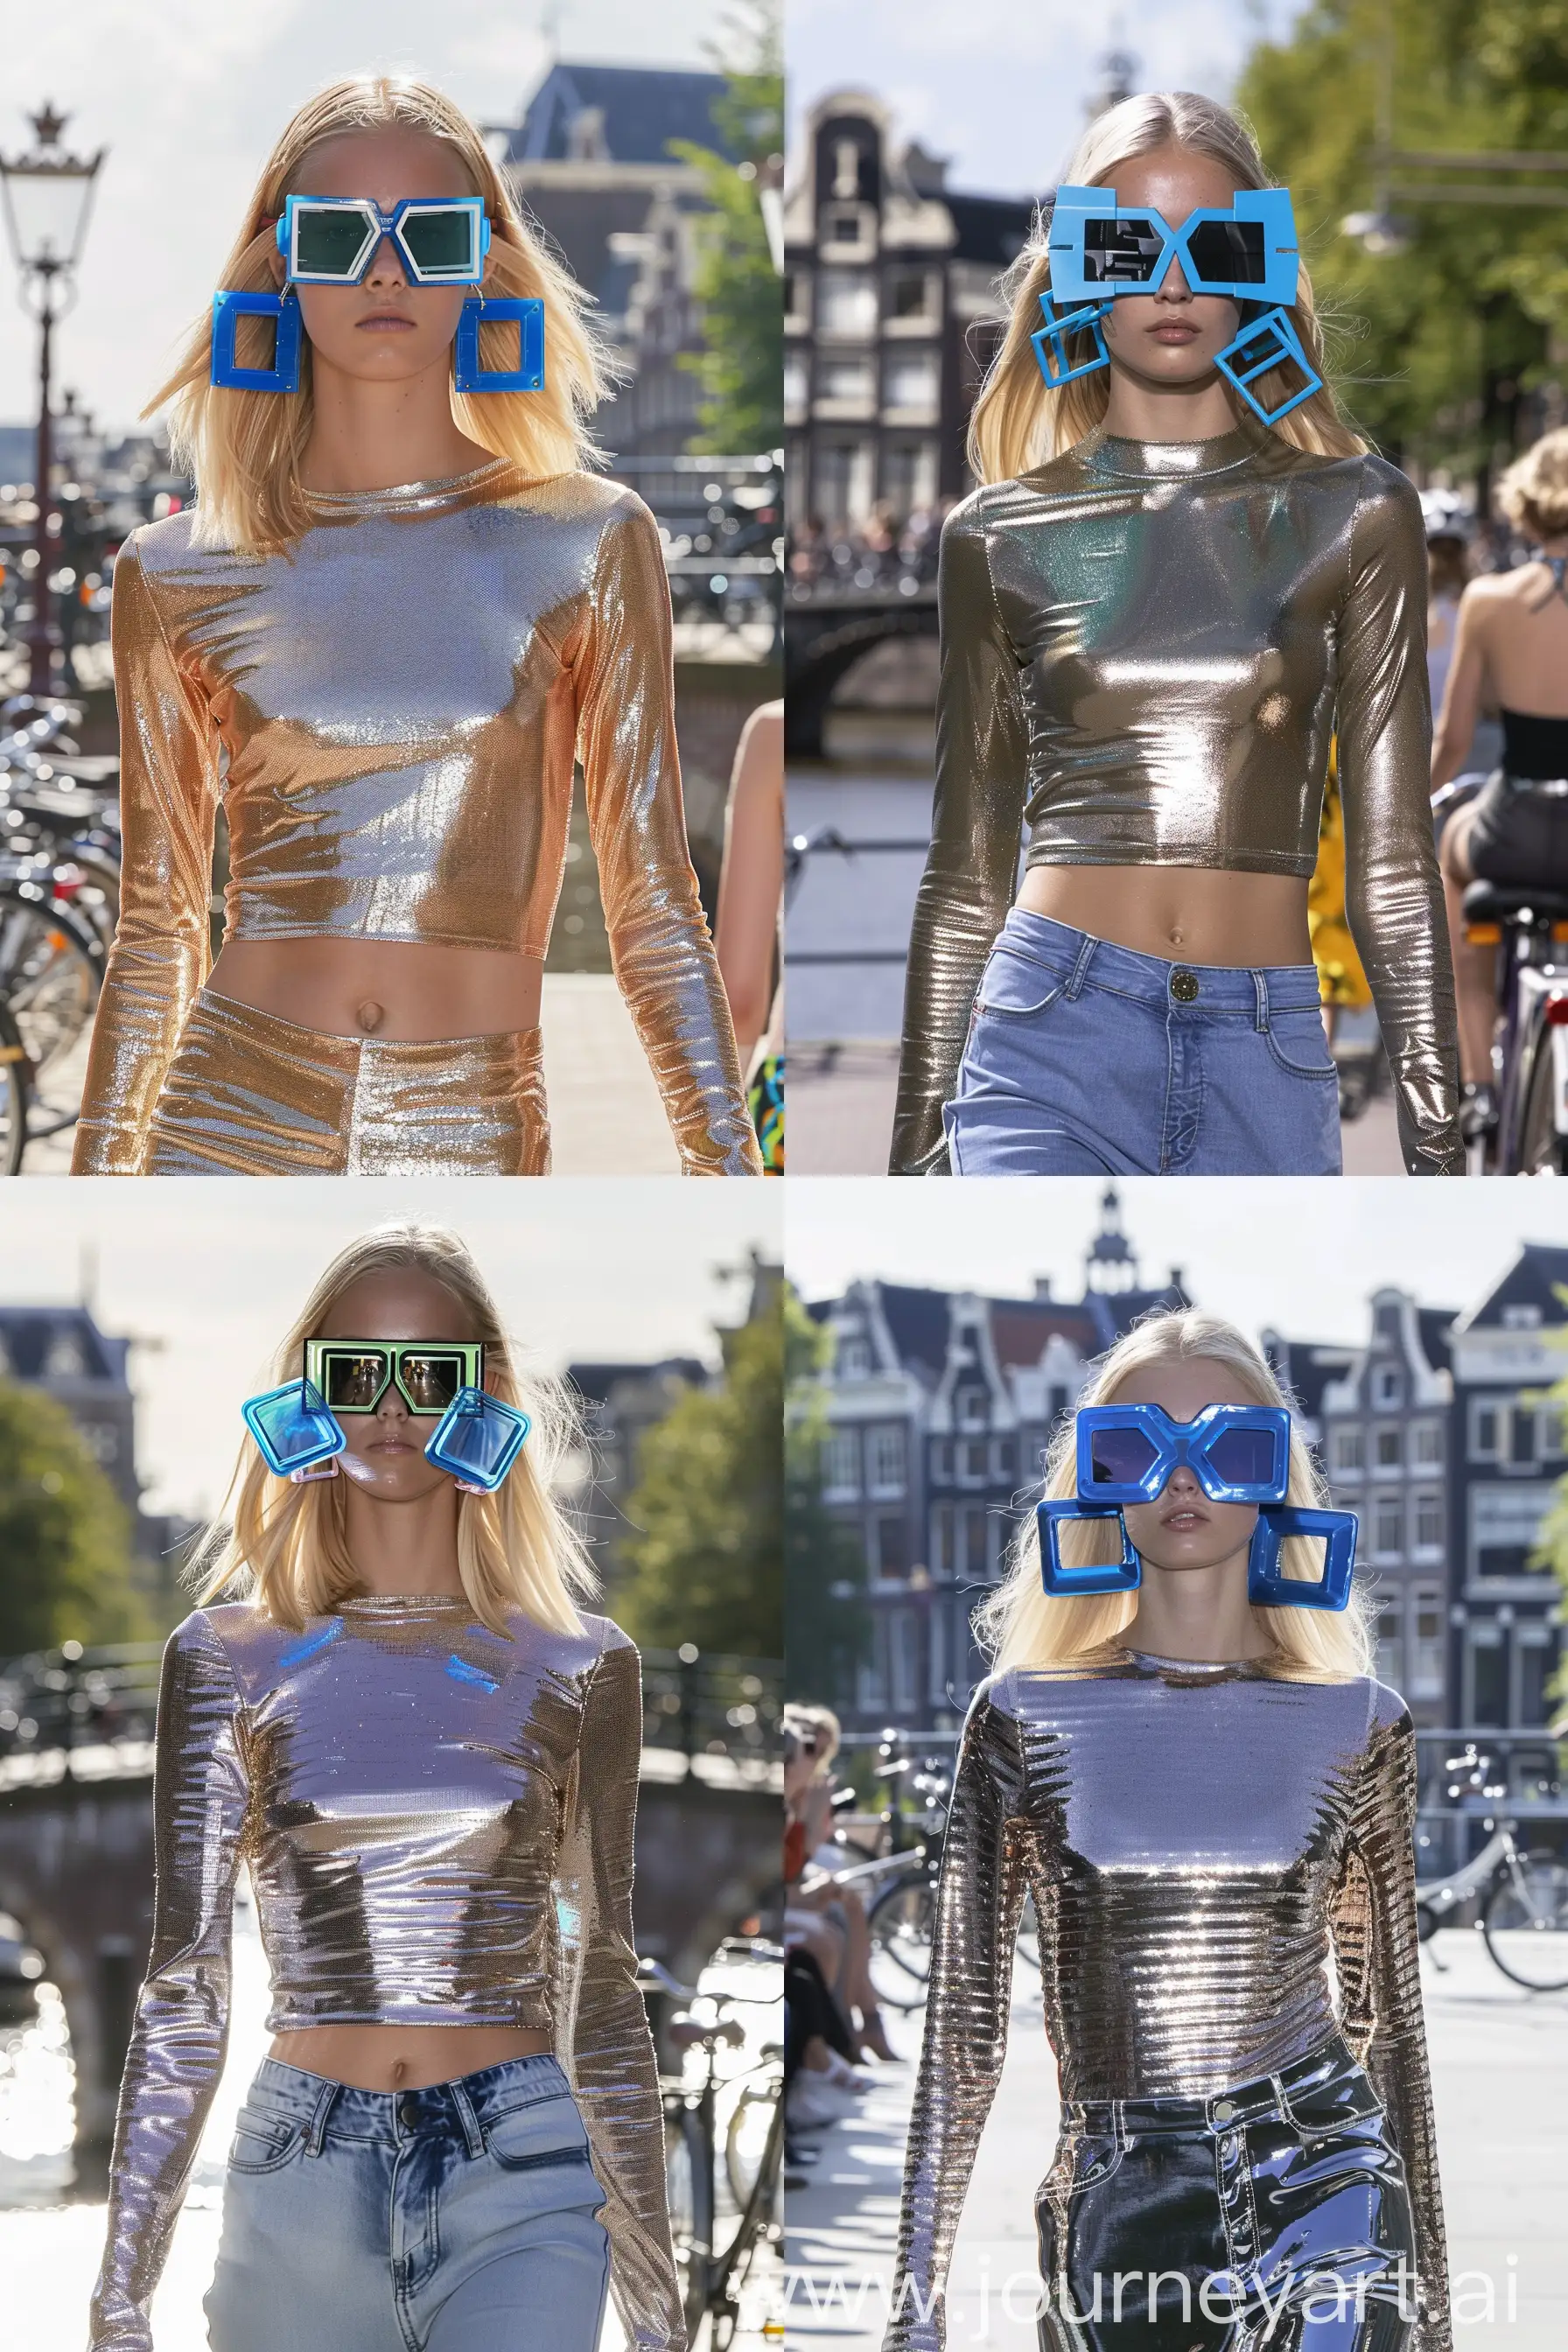 foto di modella bionda che sfila, indossa un top a maniche lunghe iridescente, immensi orecchini blu di plastica a forma di quadrato, porta occhiali da sole geometrici, è una giornata solare, lo sfondo è il ponte di Amsterdam con le biciclette --ar 2:3 --v 6.0